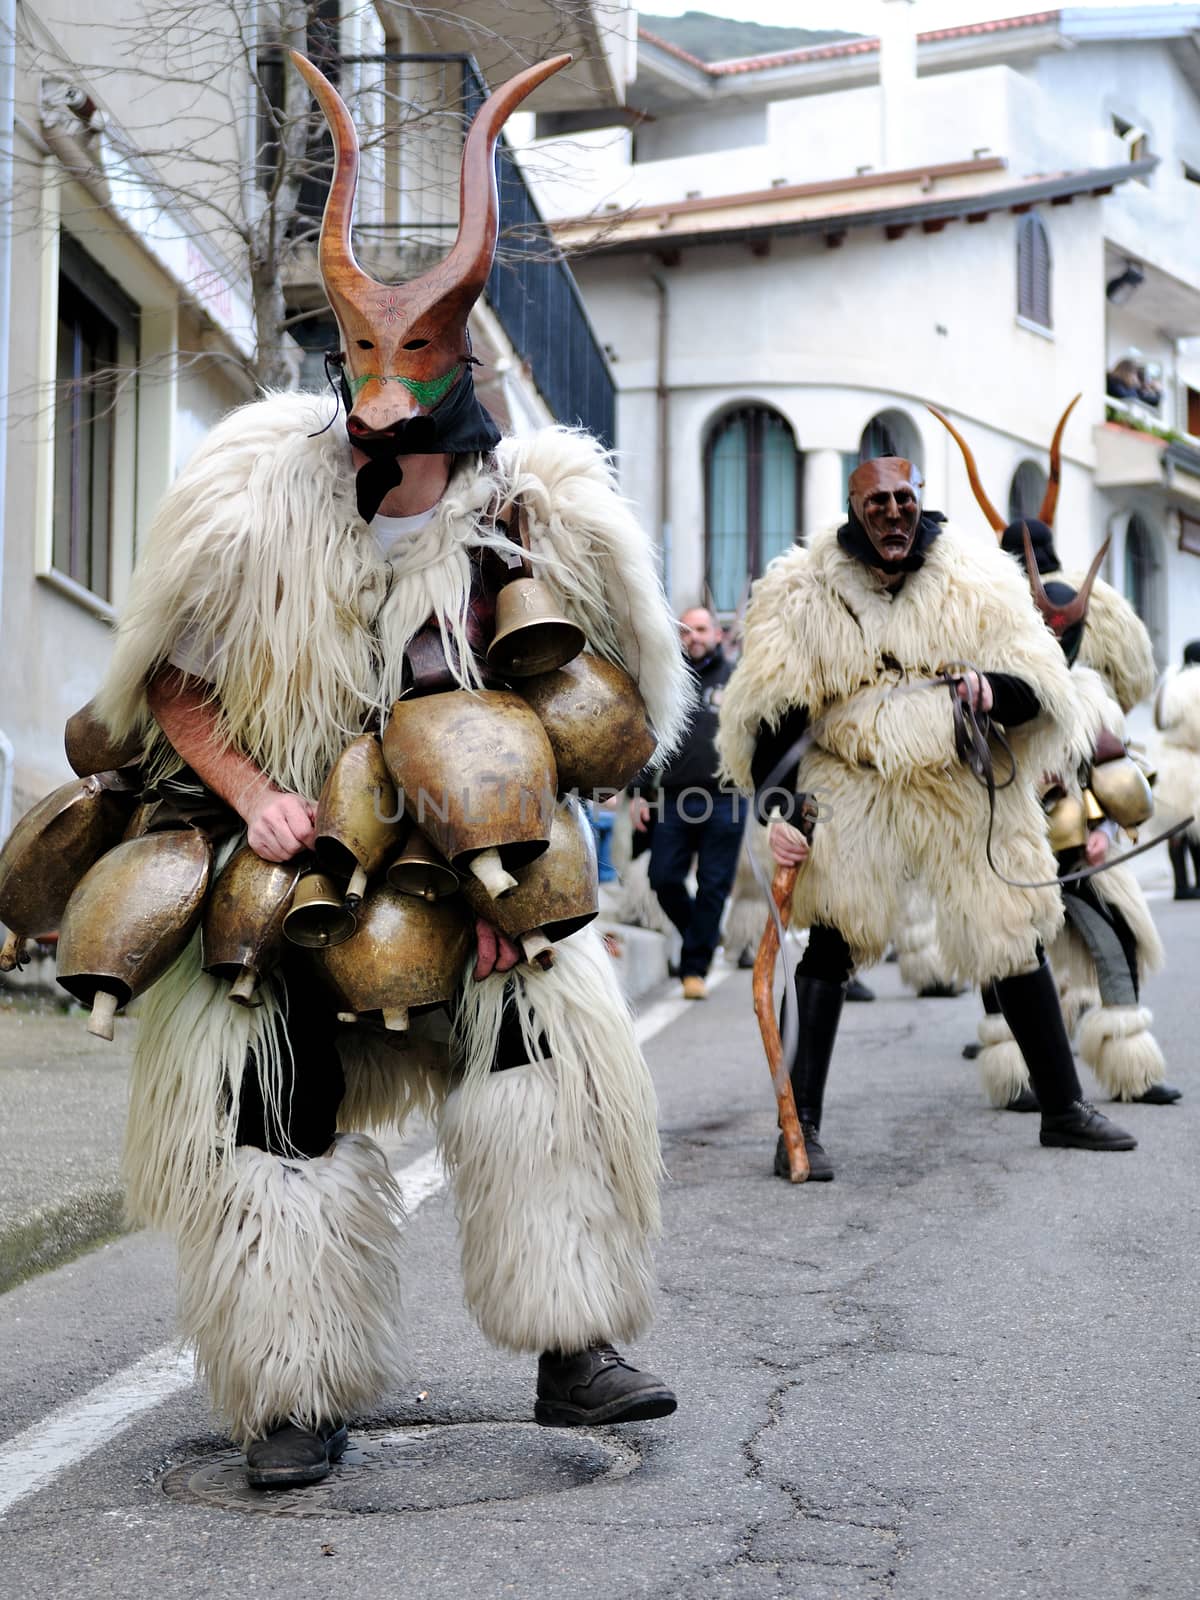 Traditional masks of Sardinia. by francescomoufotografo